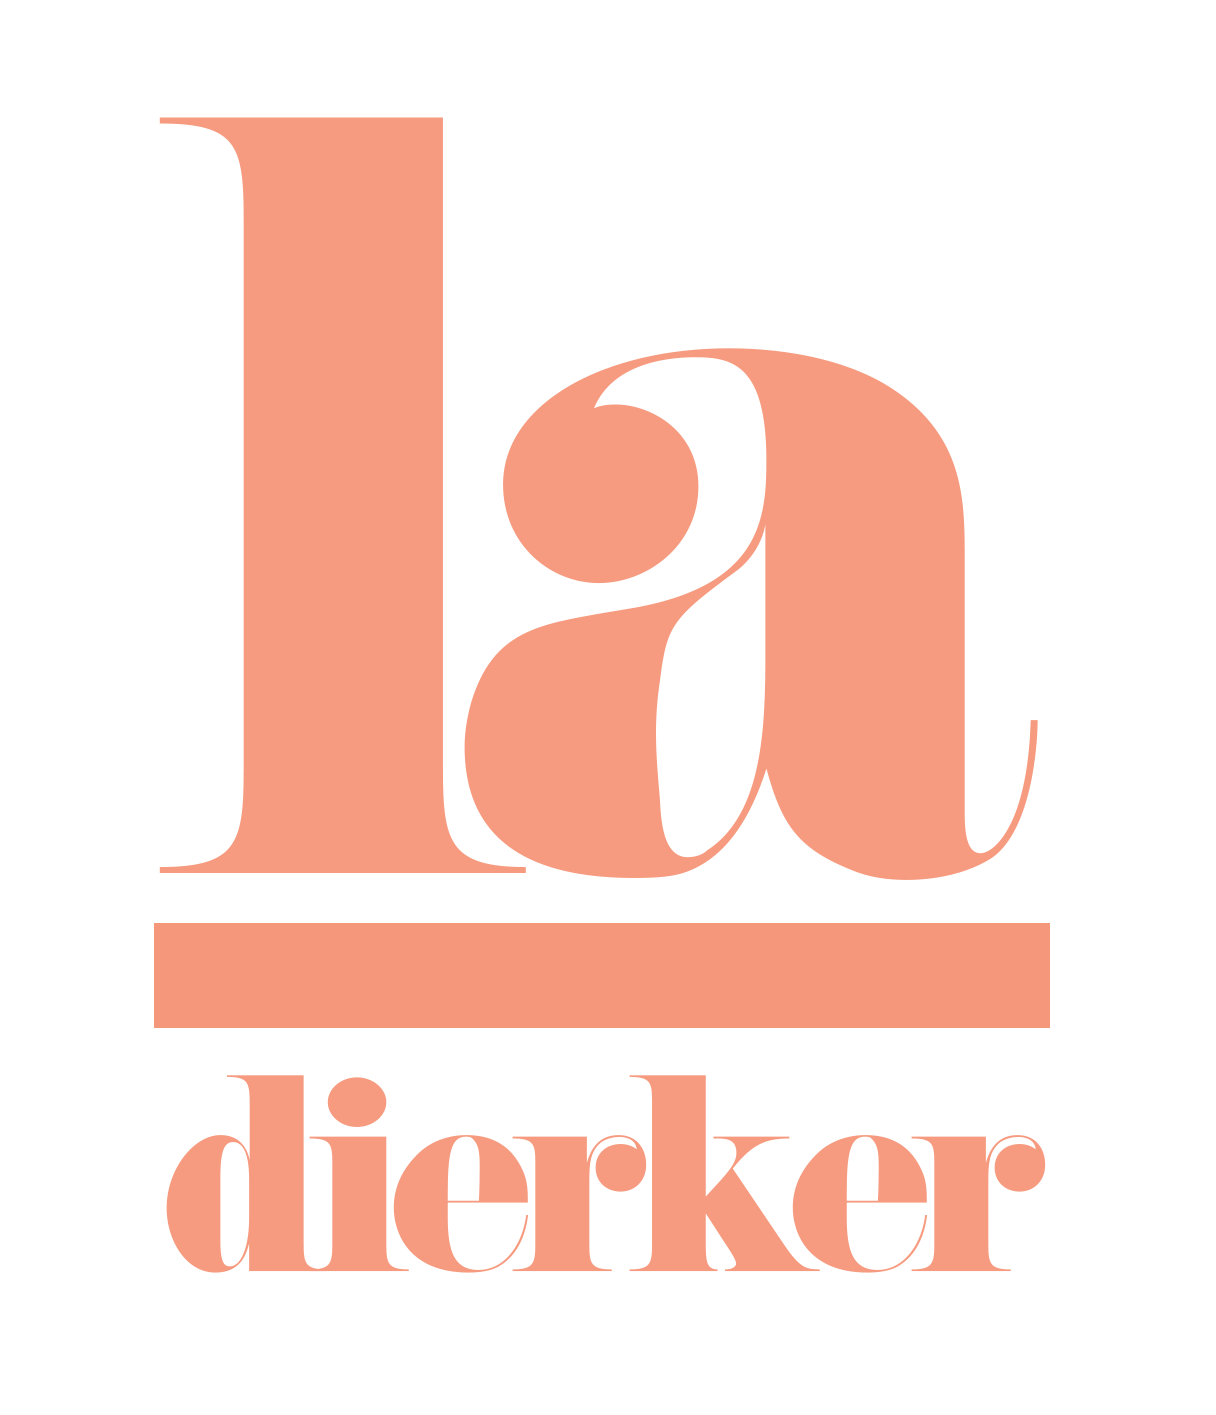 LA Dierker